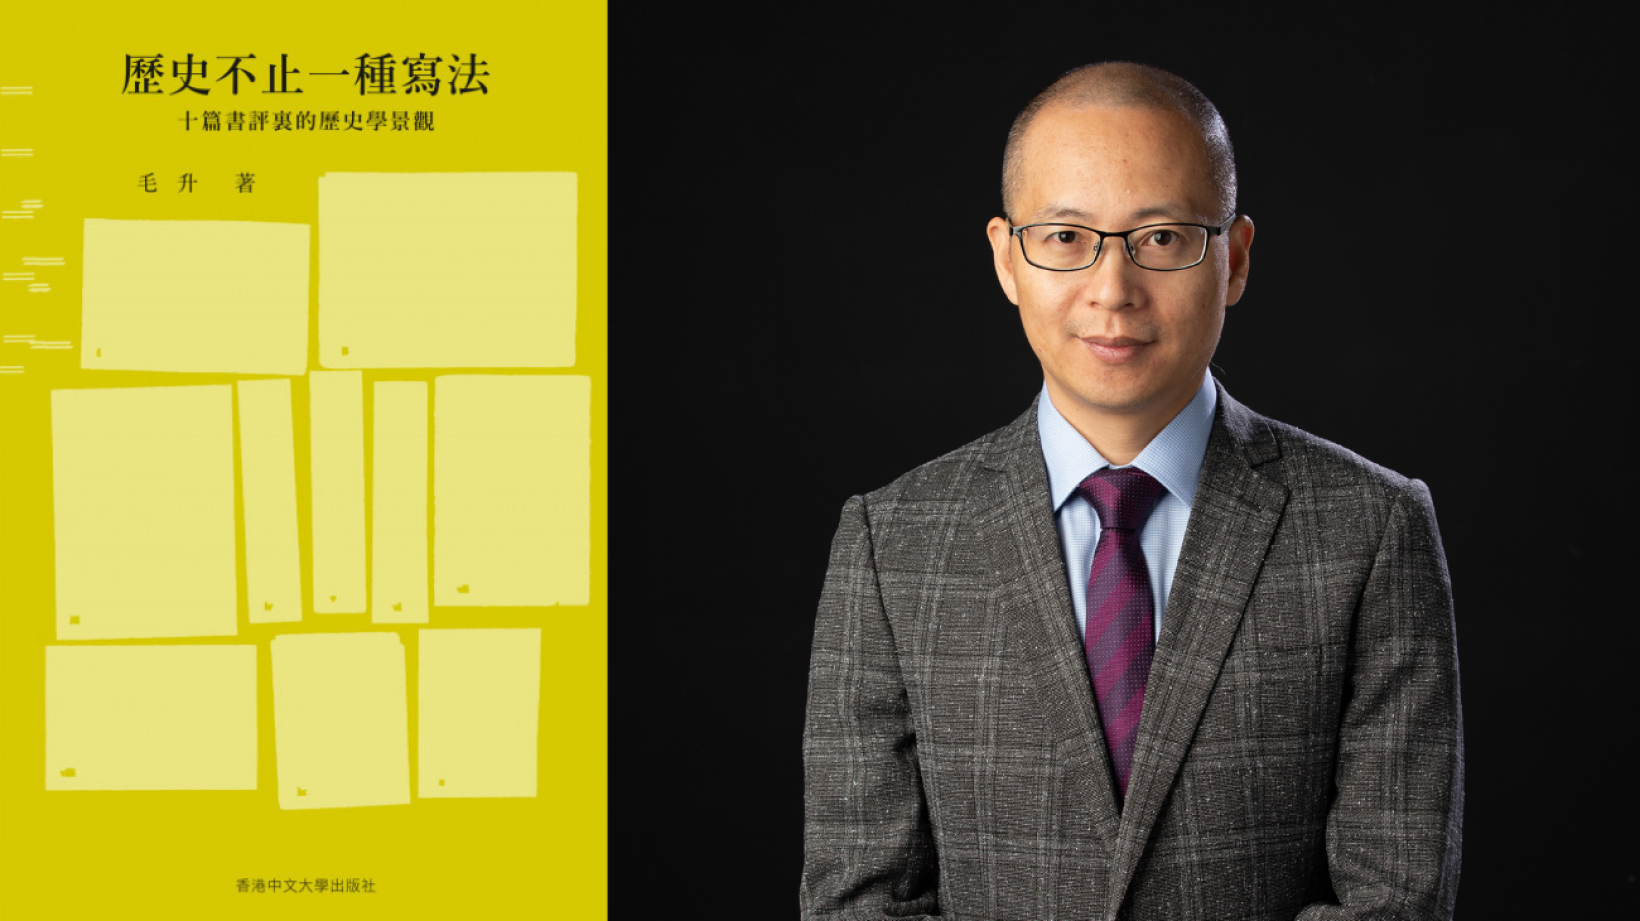 毛升博士著作入选香港初创数码广告企业 X 出版宣传支援计划